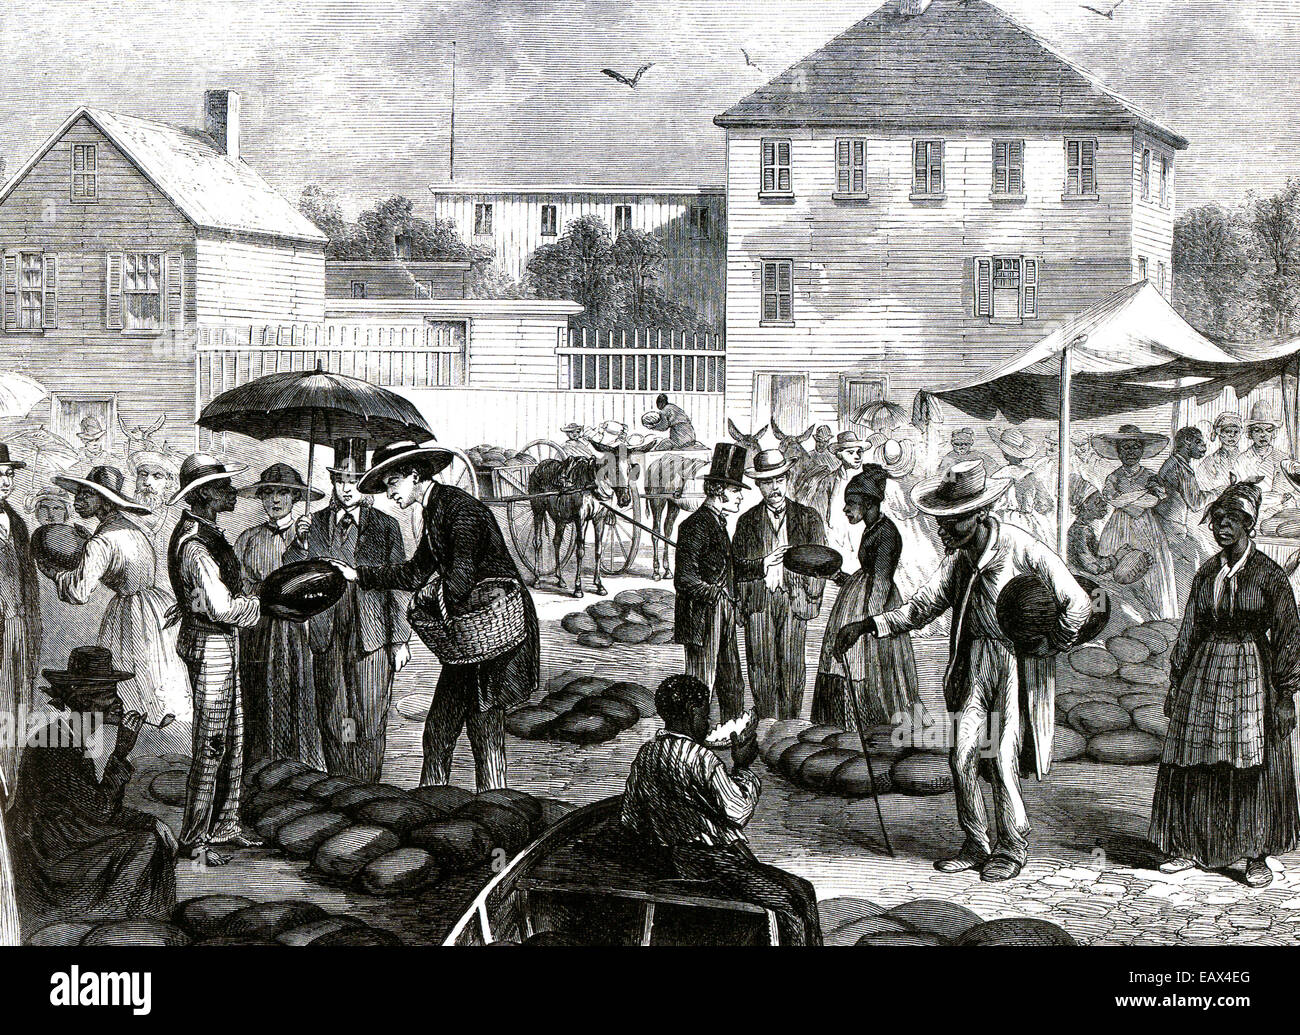 L'esclavage de la gravure sur bois du marché de la pastèque à Charleston, Caroline du Sud, de Frank Leslie's Illustrated Newspaper in 1866 Banque D'Images